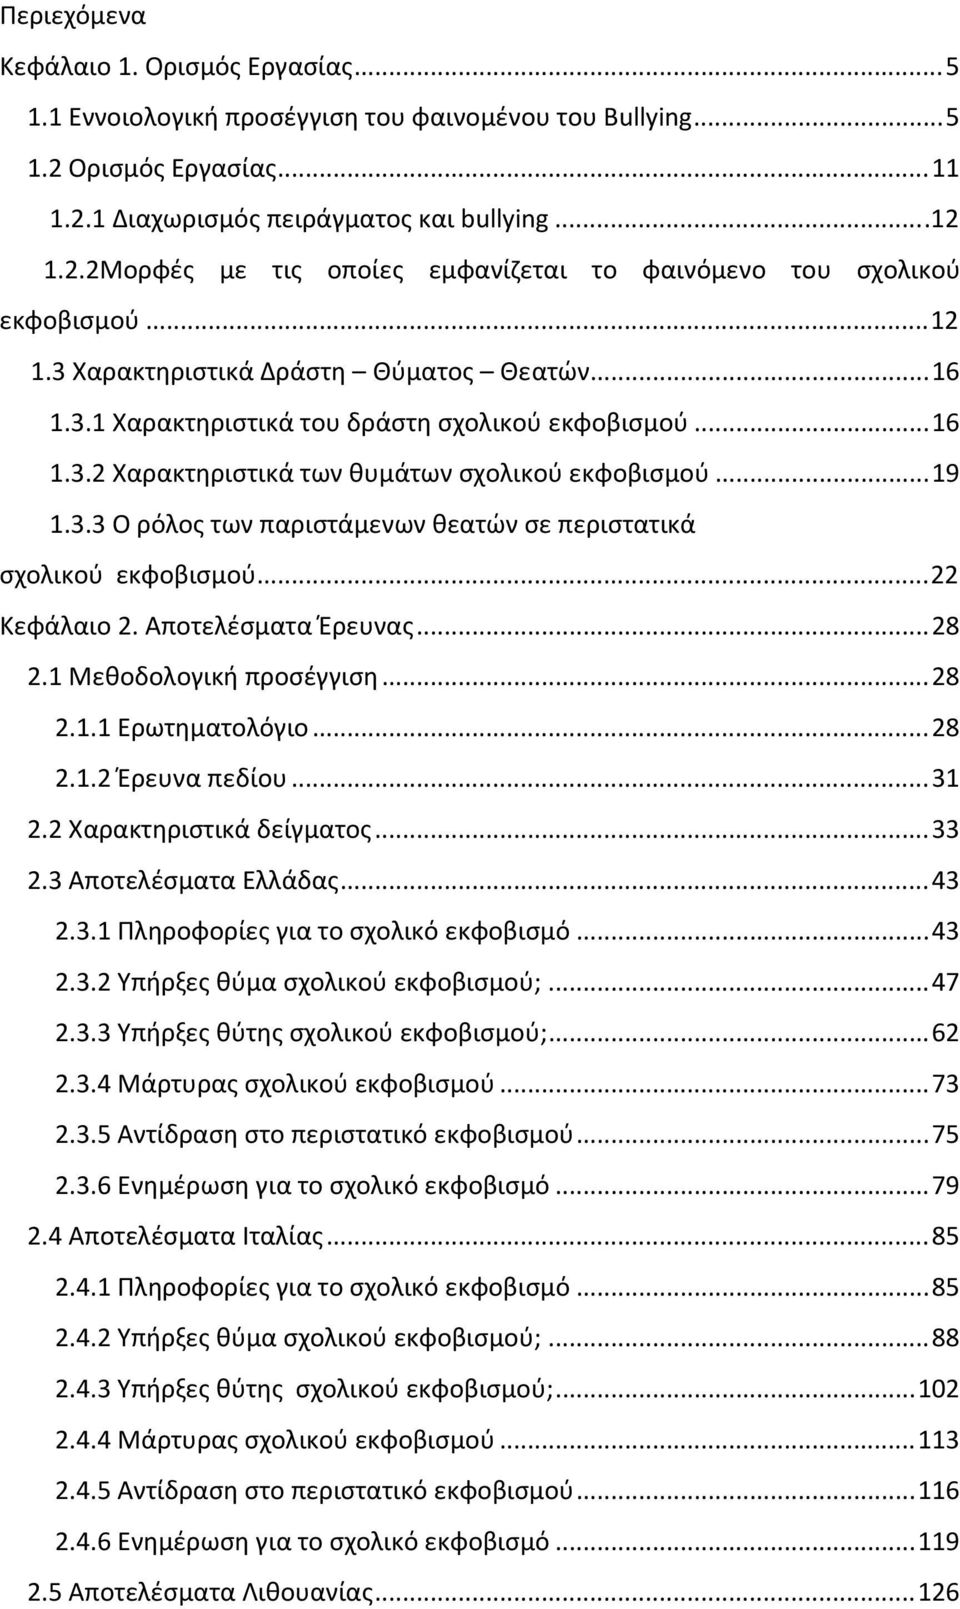 ..22 Κεφάλαιο 2. Αποτελέσματα Έρευνας...28 2.1 Μεθοδολογική προσέγγιση...28 2.1.1 Ερωτηματολόγιο...28 2.1.2 Έρευνα πεδίου...31 2.2 Χαρακτηριστικά δείγματος...33 2.3 Αποτελέσματα Ελλάδας...43 2.3.1 Πληροφορίες για το σχολικό εκφοβισμό.